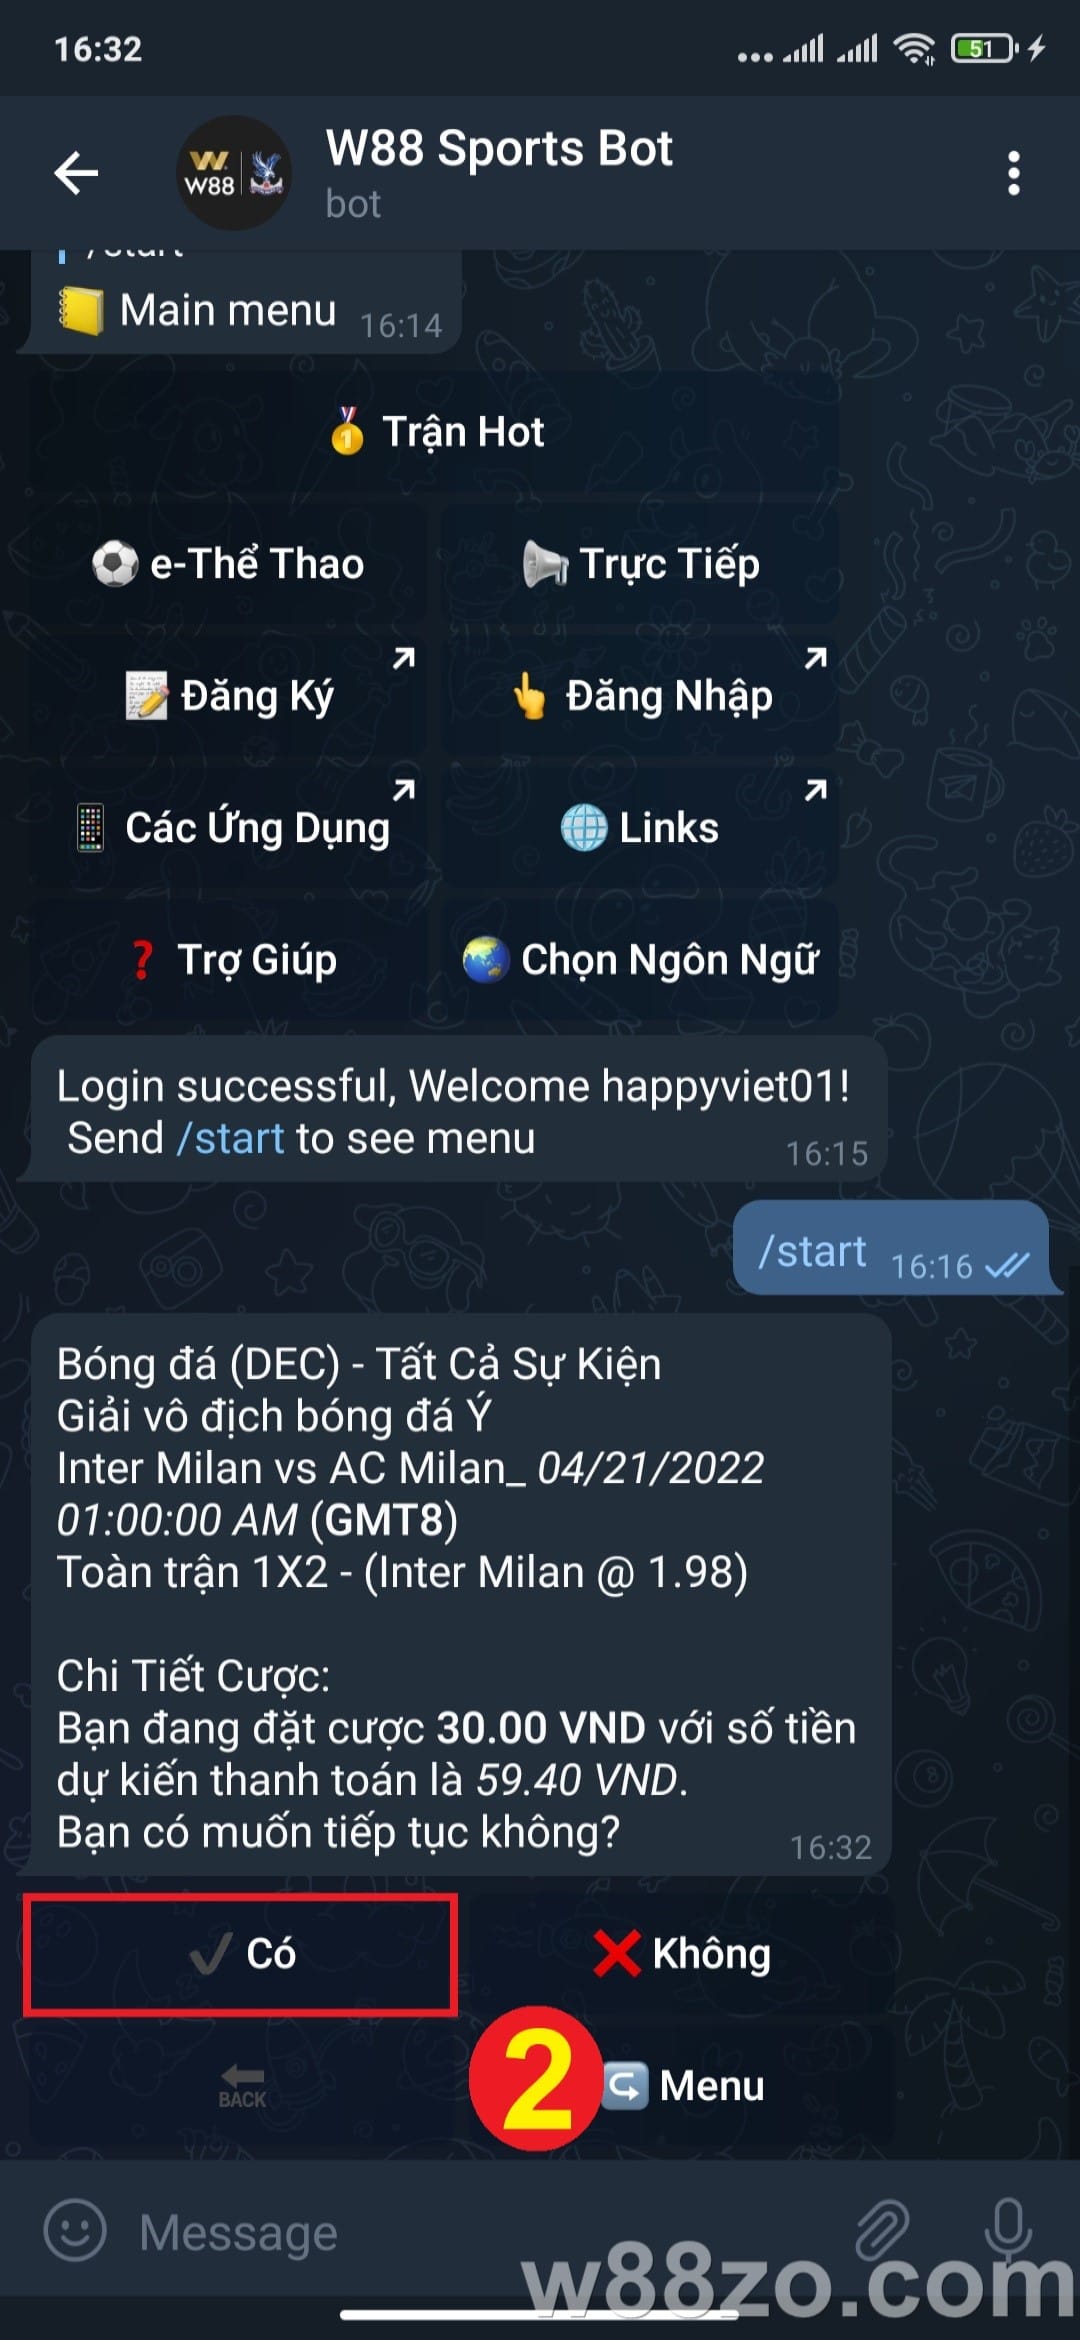 Hướng dẫn sử dụng Telegram W88 đặt cược thể thao nhanh chóng (17)